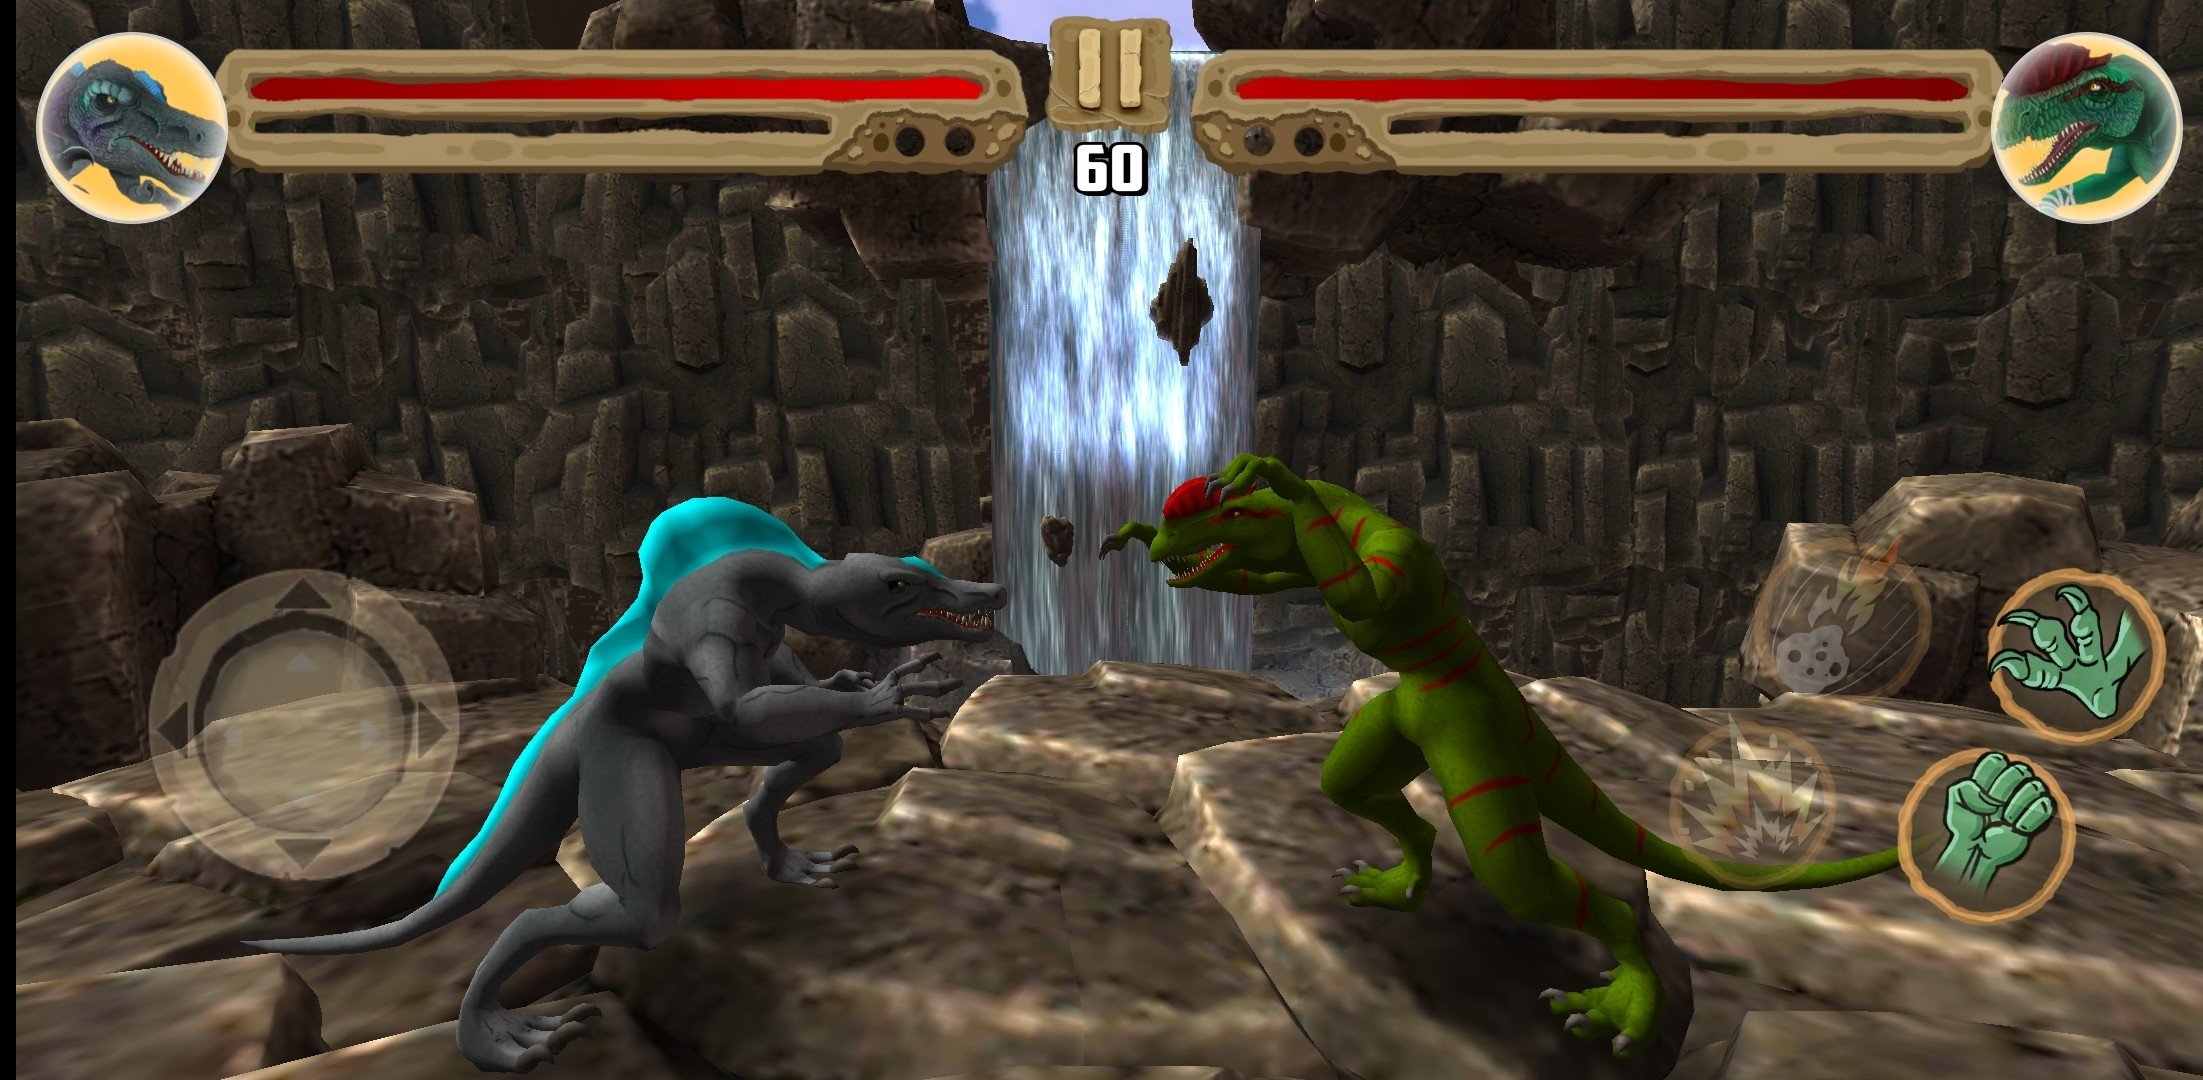 Faça o download do Jogos de dinossauros para Android - Os melhores jogos  gratuitos de Dinossauros APK